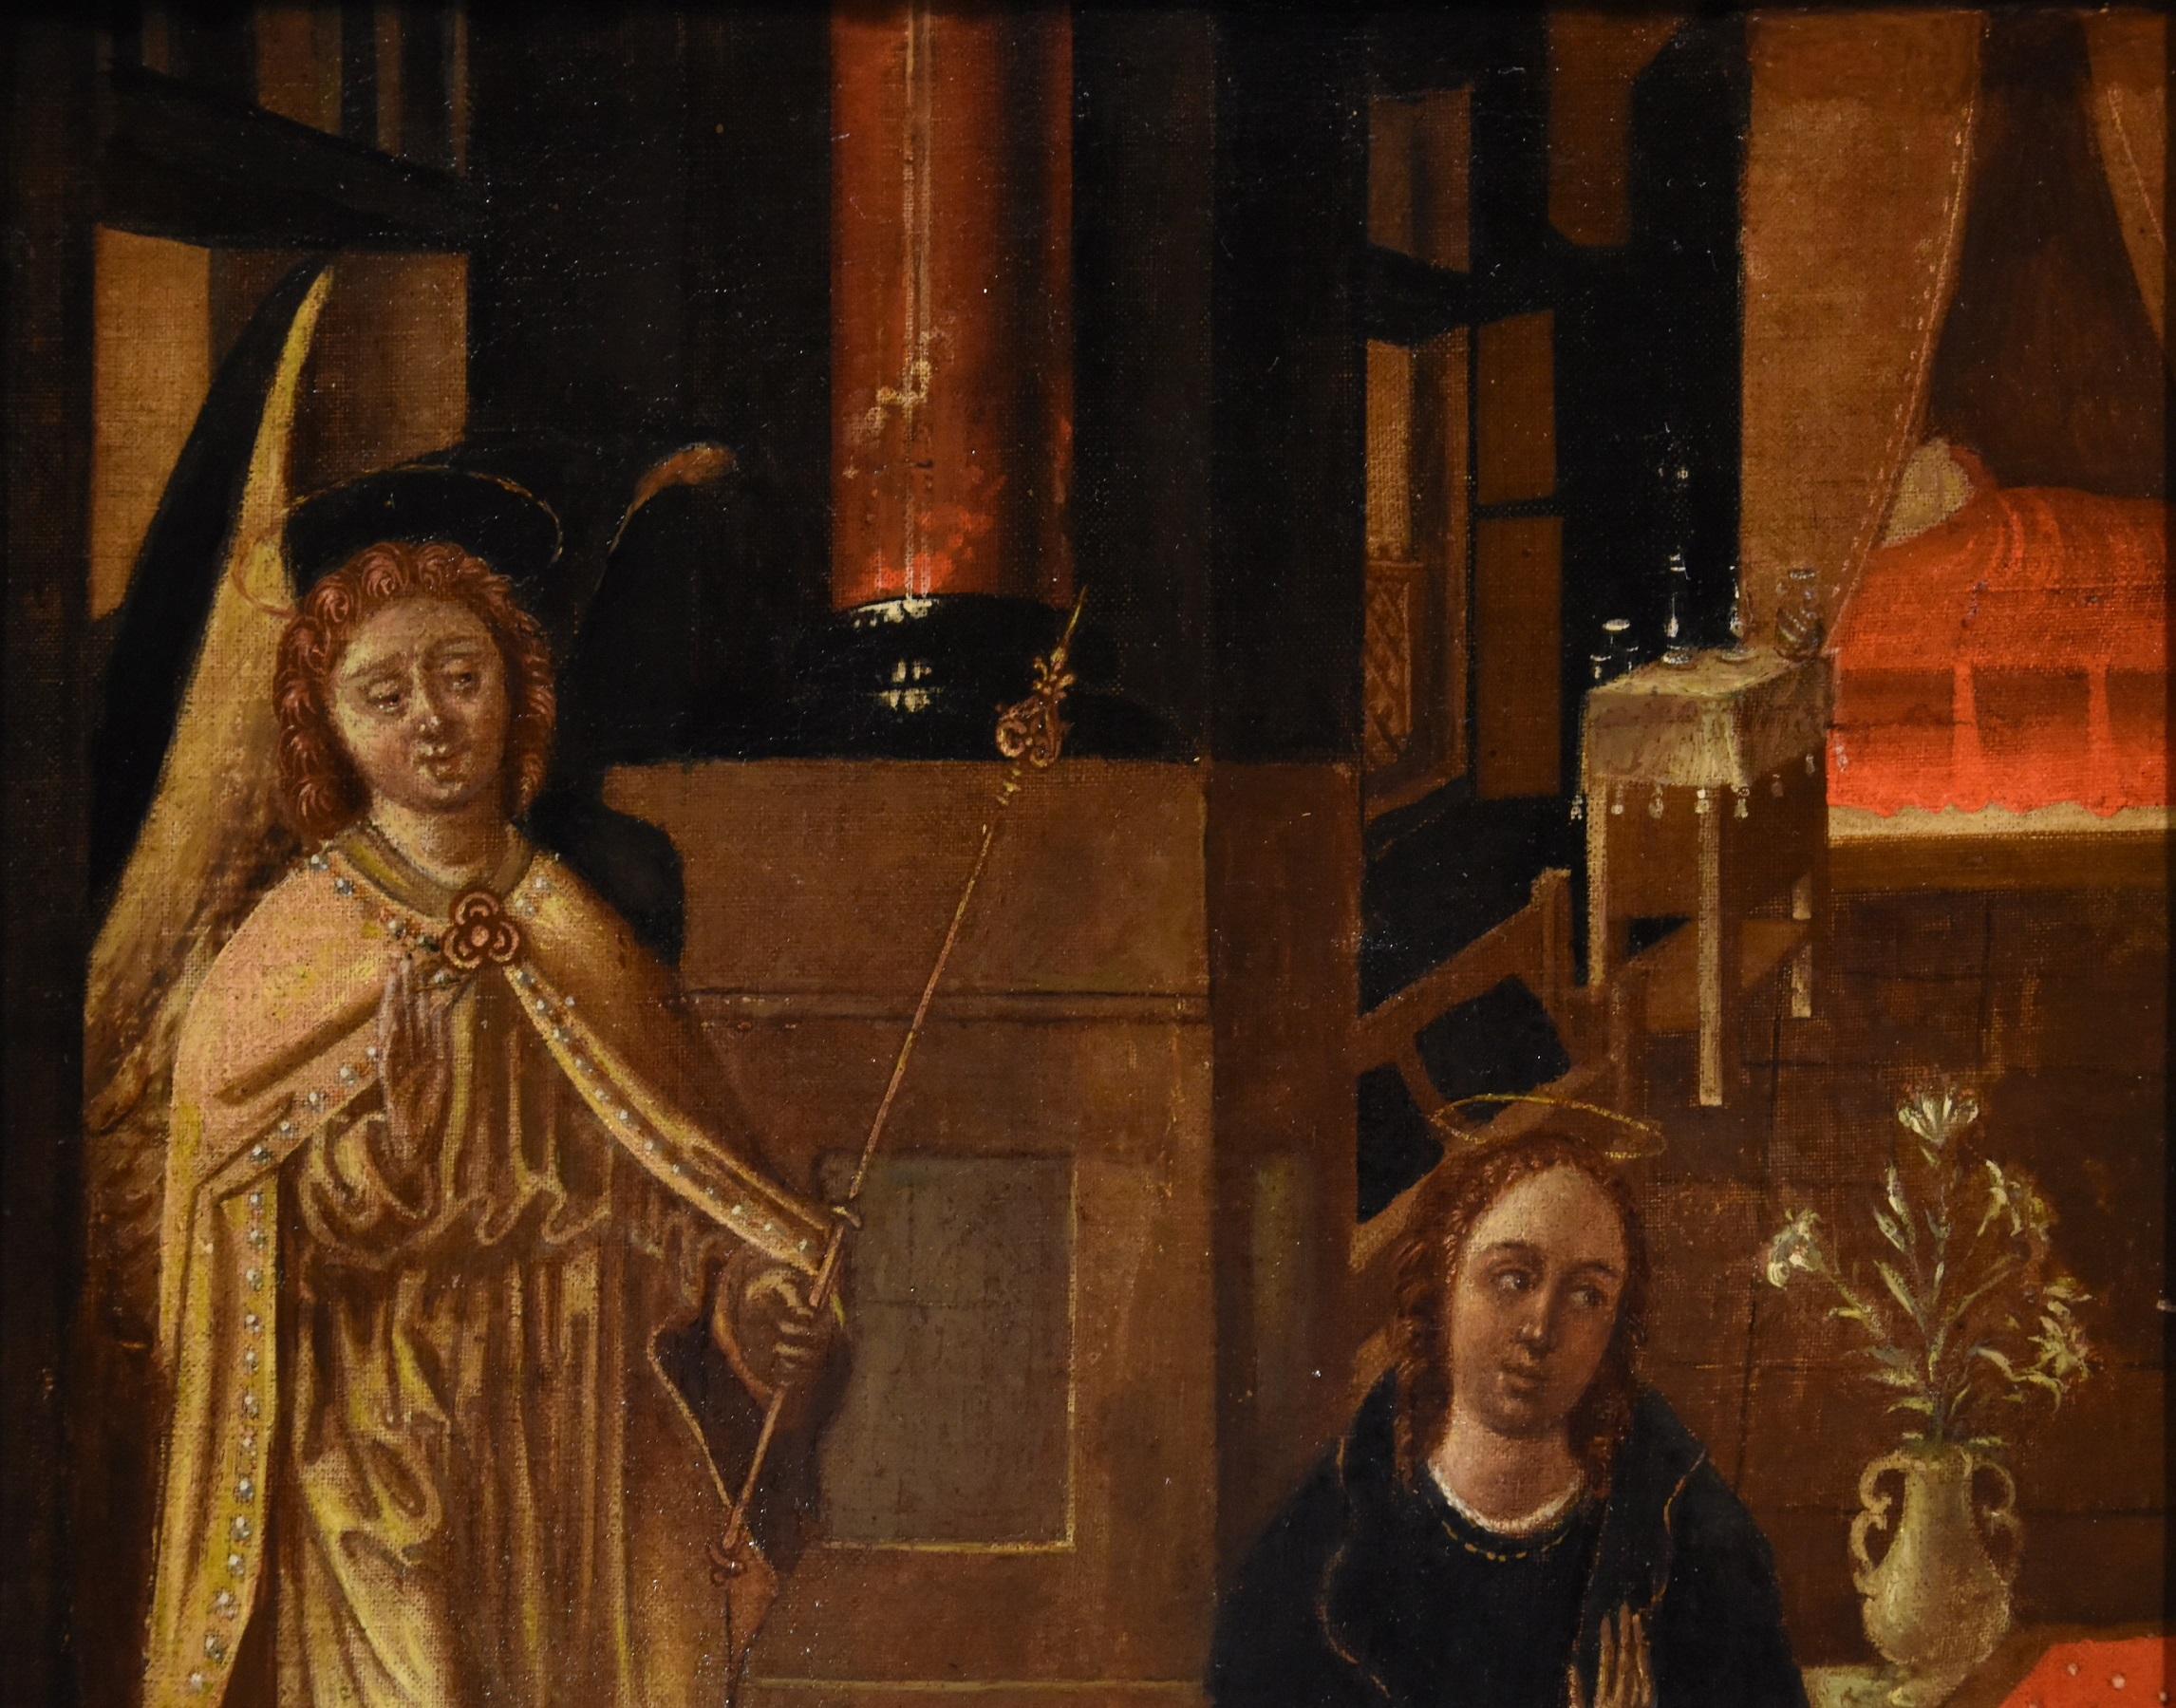 Flämischer Maler des 16. und 17. Jahrhunderts
Die Verkündigung

Öl auf Leinwand 844 x 33 cm (im Rahmen 63 x 52 cm).

Das Werk präsentiert sich mit einem kanonischen ikonografischen und stilistischen Schema, mit dem Erzengel Gabriel, der der Jungfrau